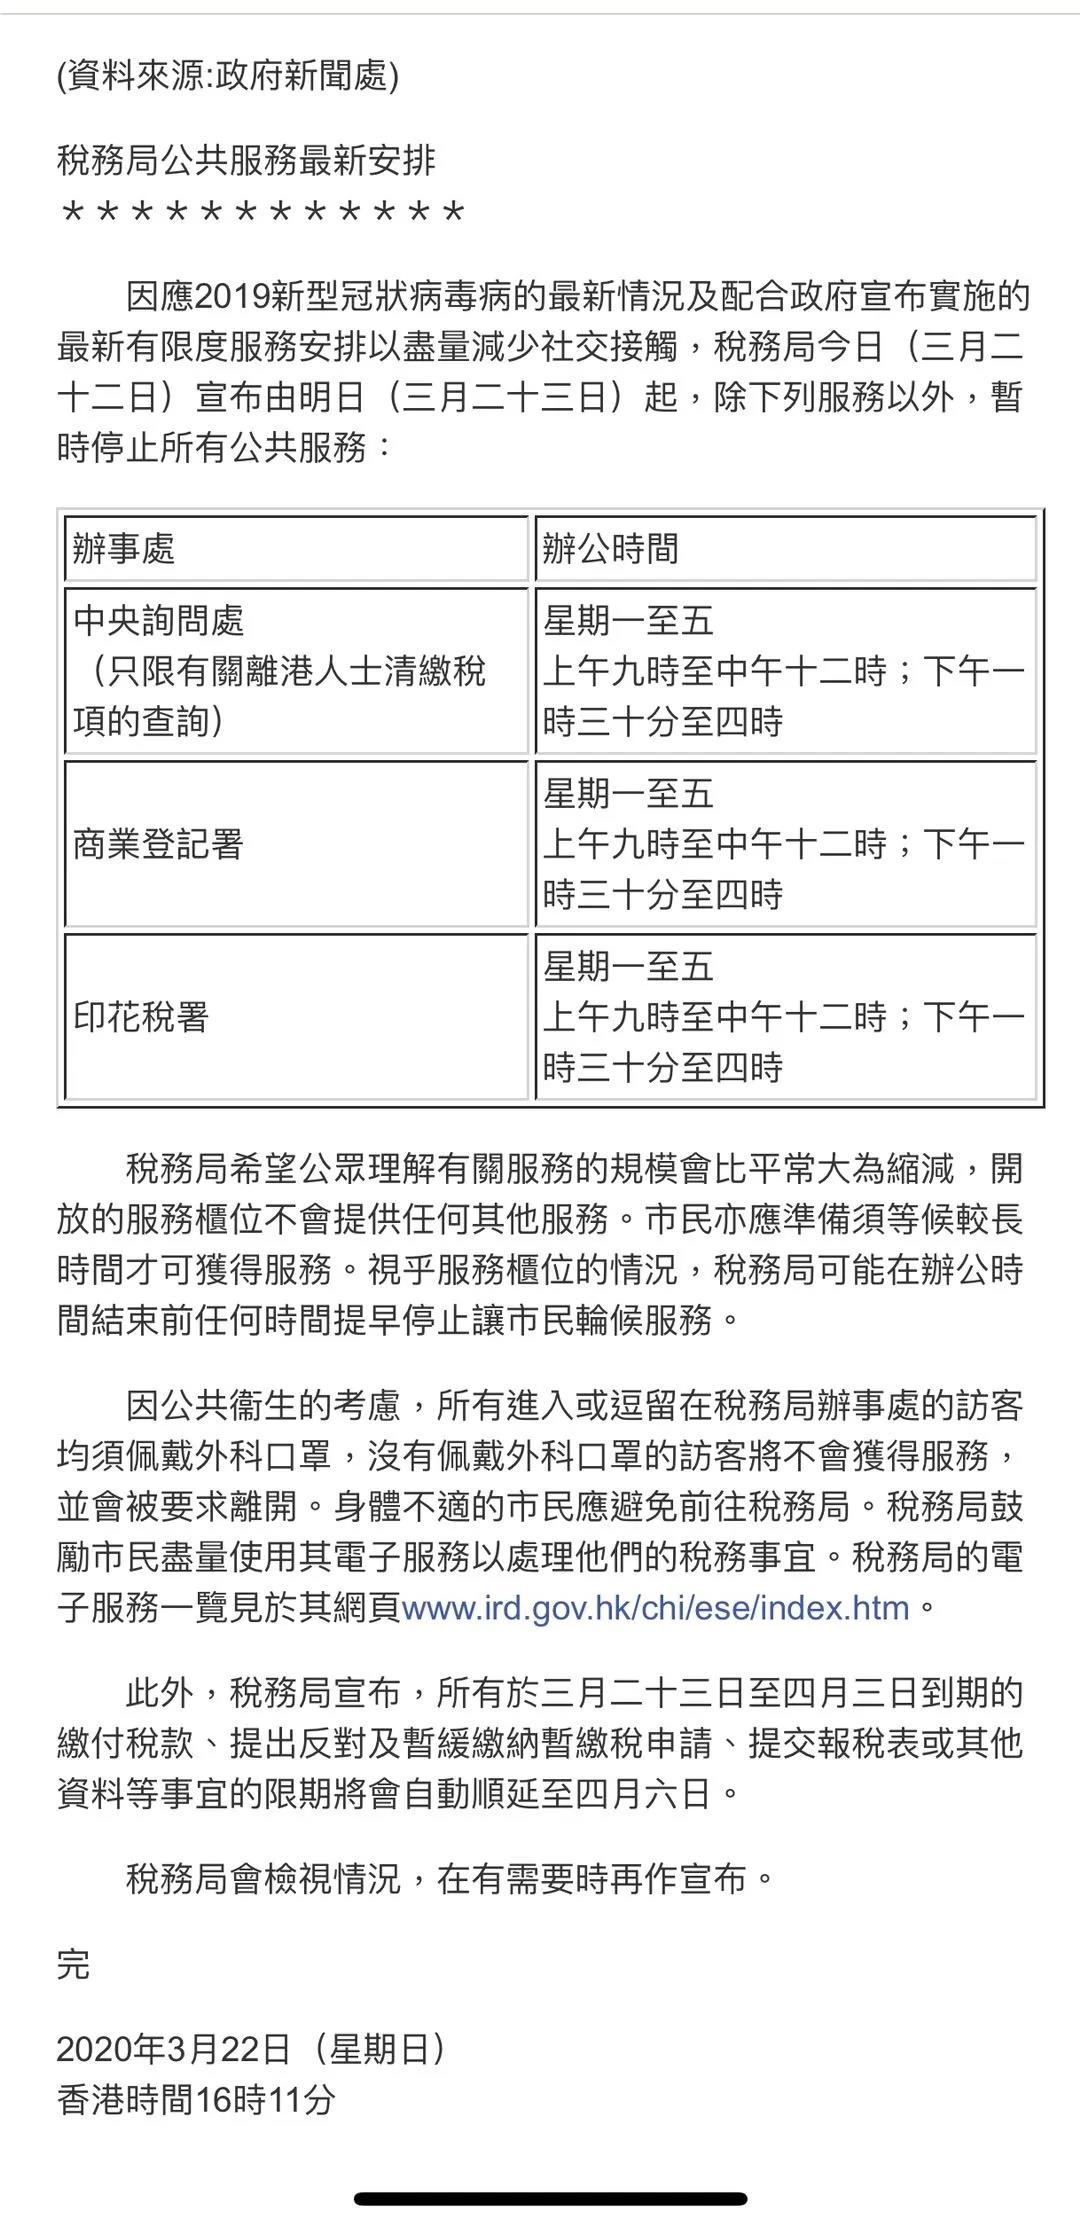 香港公司注册处与税务局公共服务公告